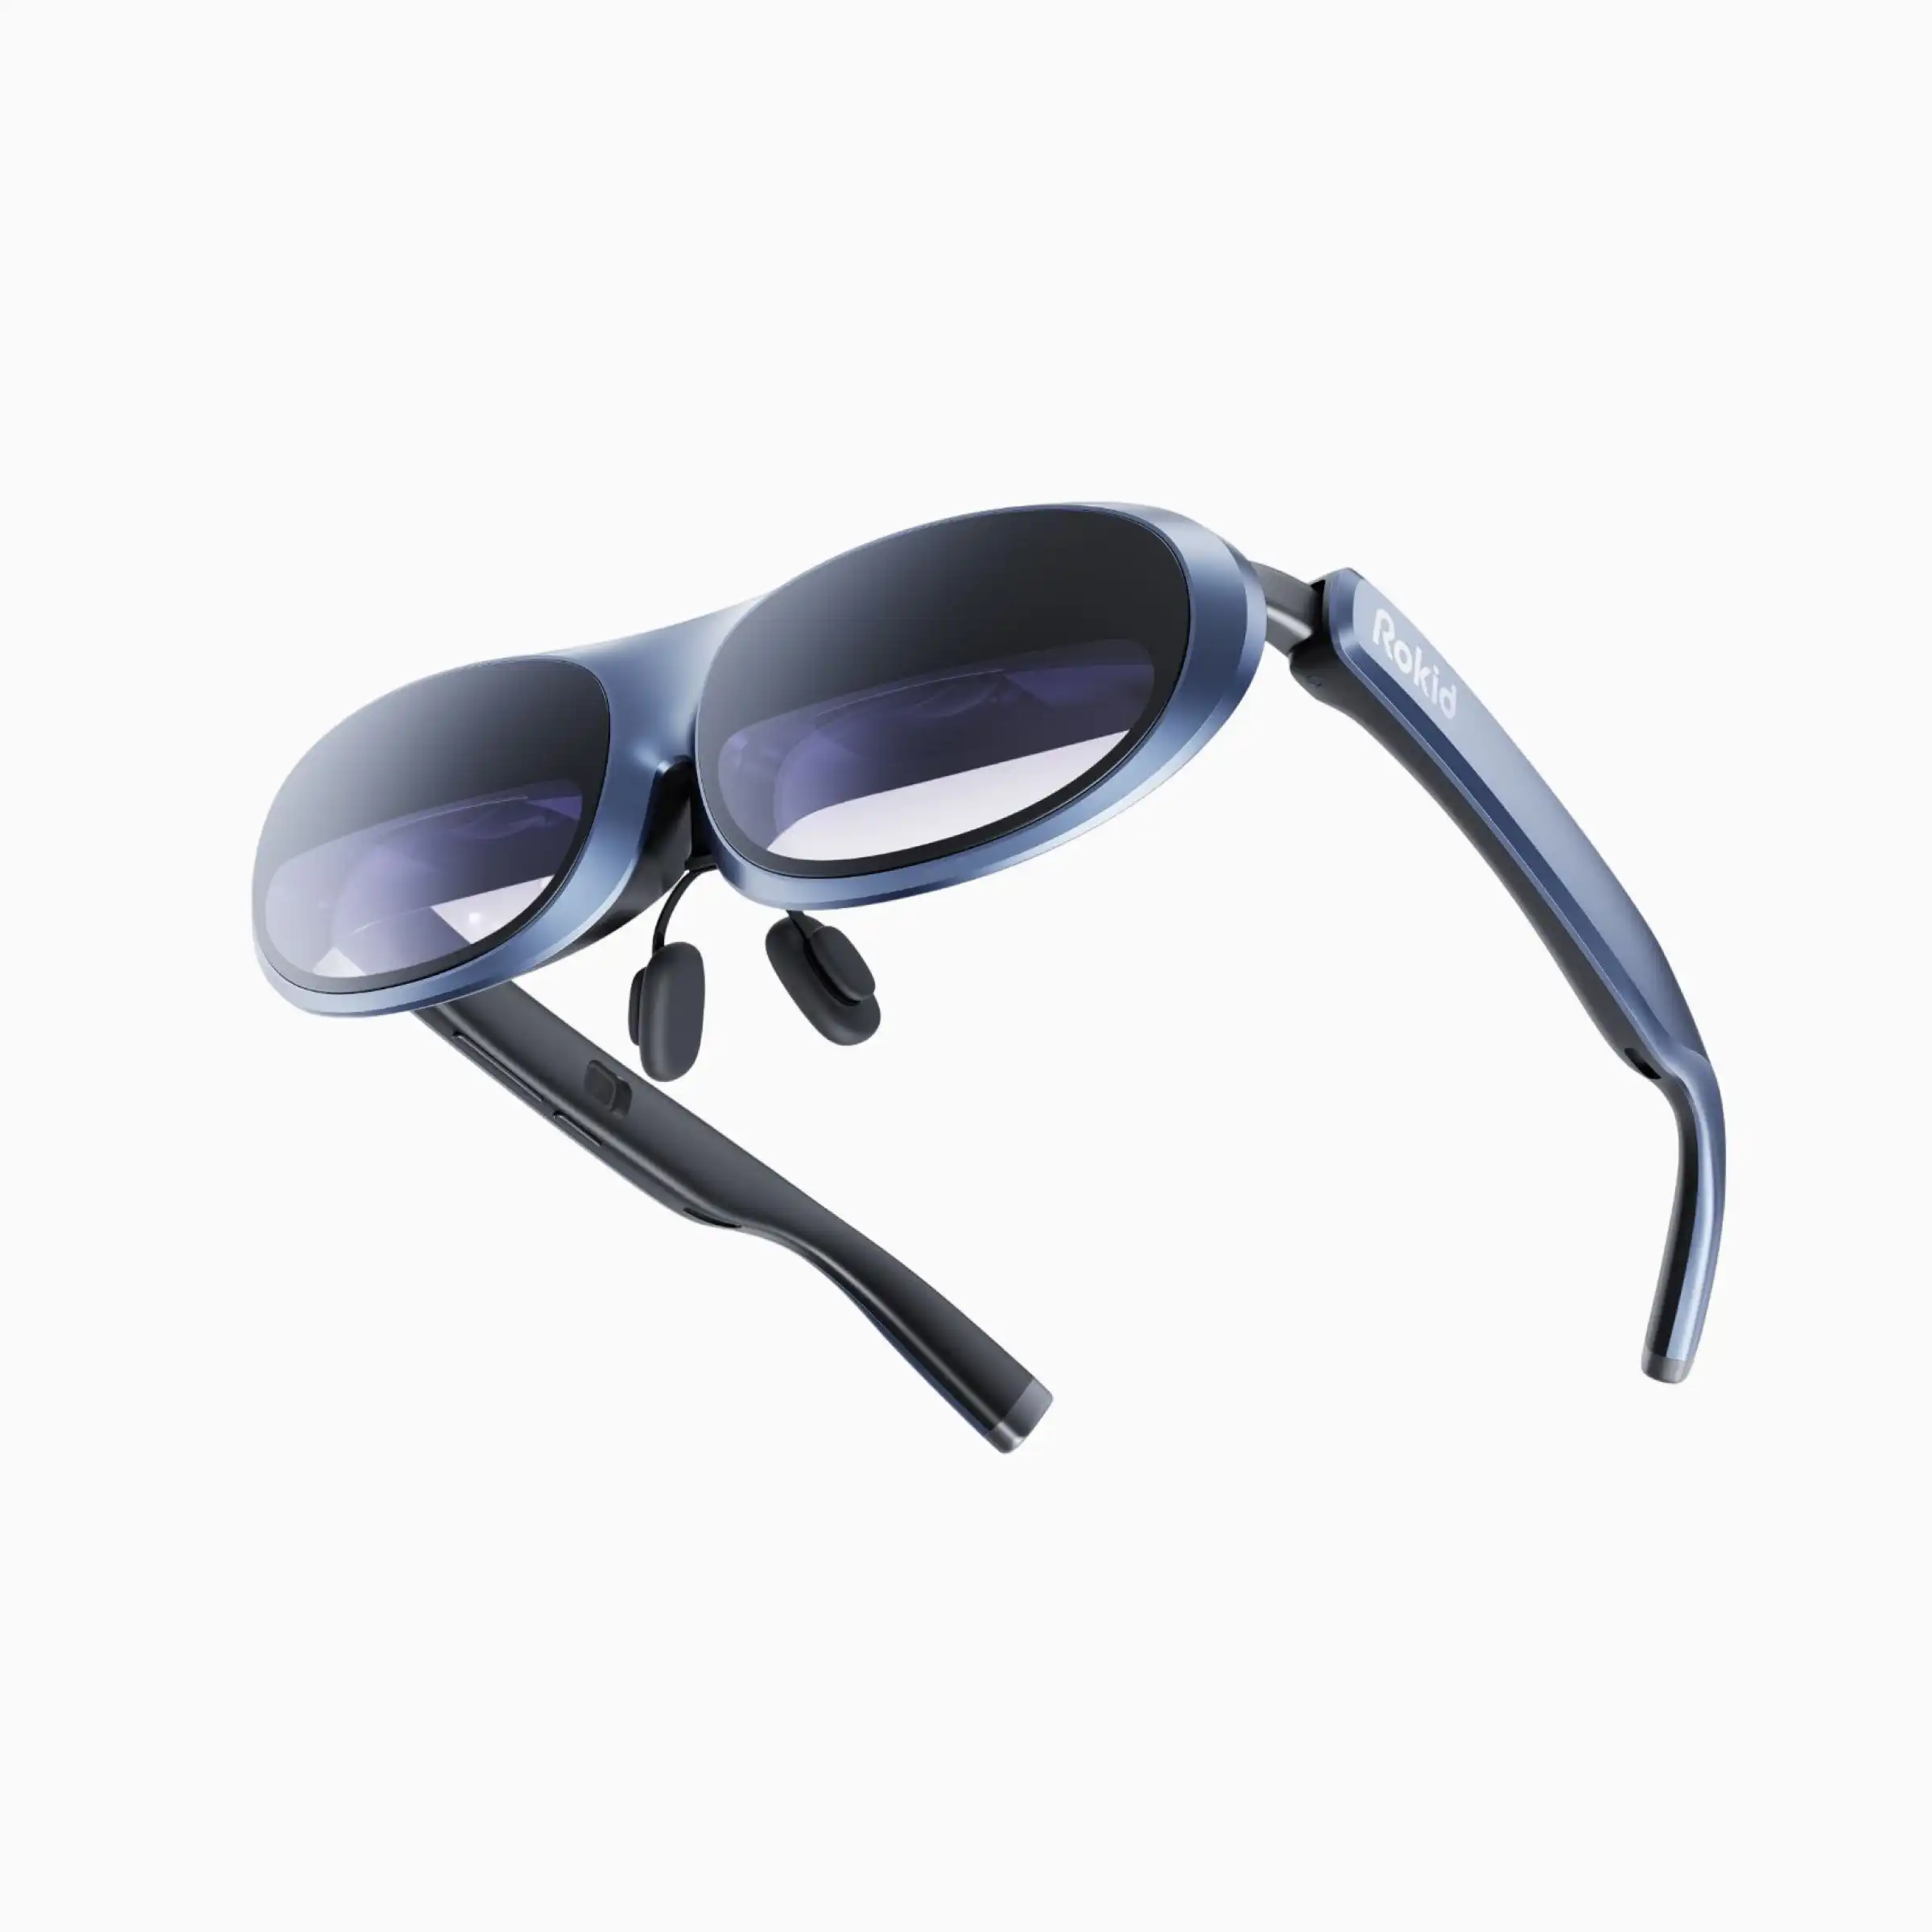 نظارة الذكية الذكية ماركة ووبرو x روكيد ماكس أر الأكثر مبيعاً نظارة ذكية ذكية بمقاس 250 بوصة بتقنية AR/VR وتدعم ثلاثية الأبعاد ومعدل التحديث 120 هرتز وحجم الصورة 4K